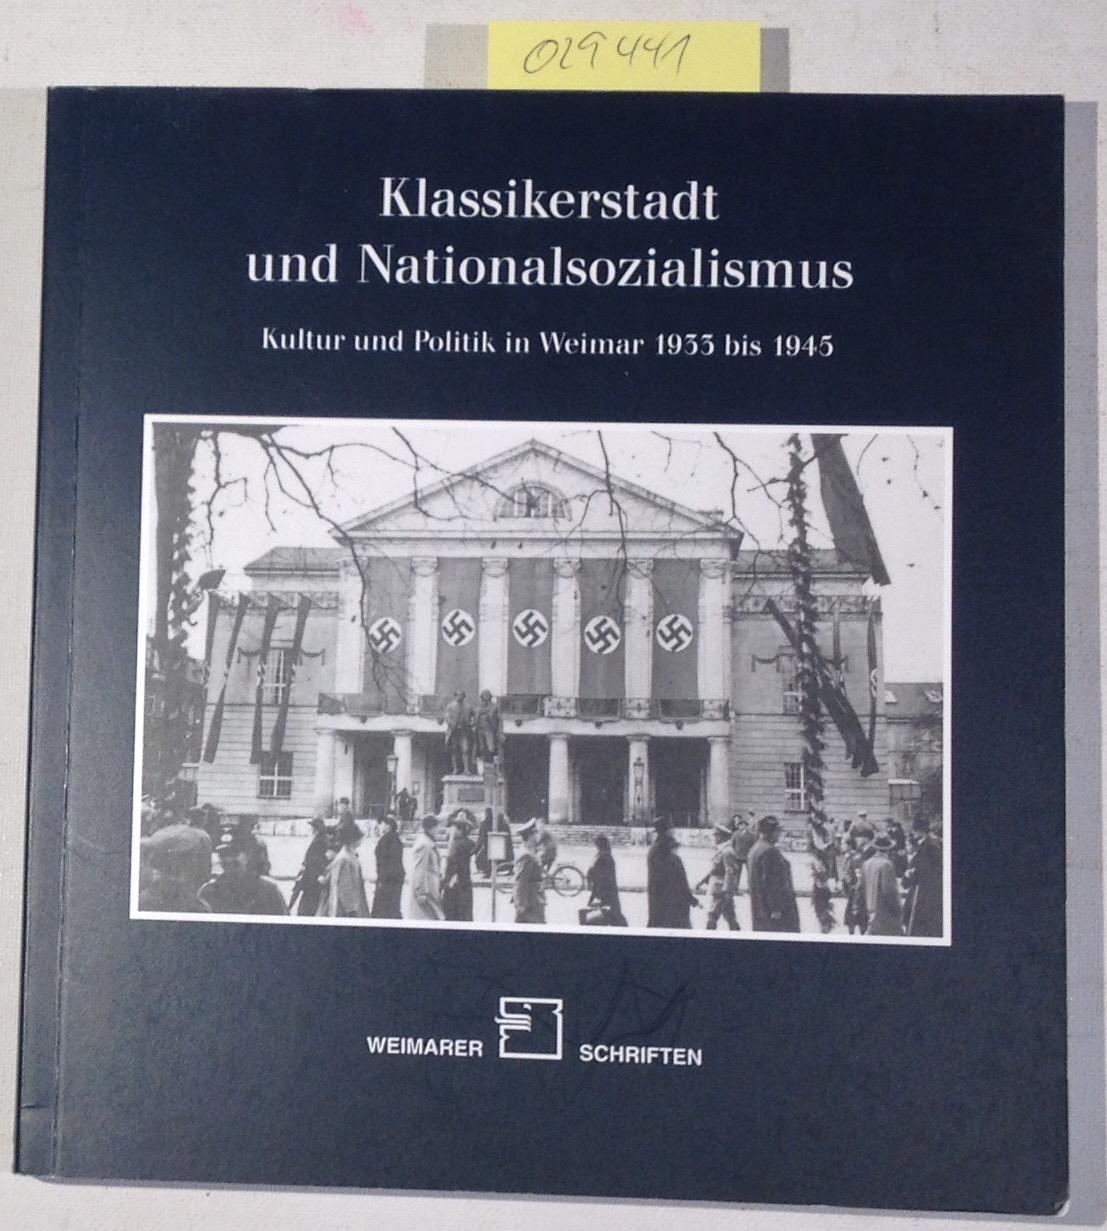 Klassikerstadt und Nationalsozialismus. Kultur und Politik in Weimar 1933 bis 1945. Weimarer Schriften heft 56/2002 - Ulbricht, Justus H. - Herausgeber